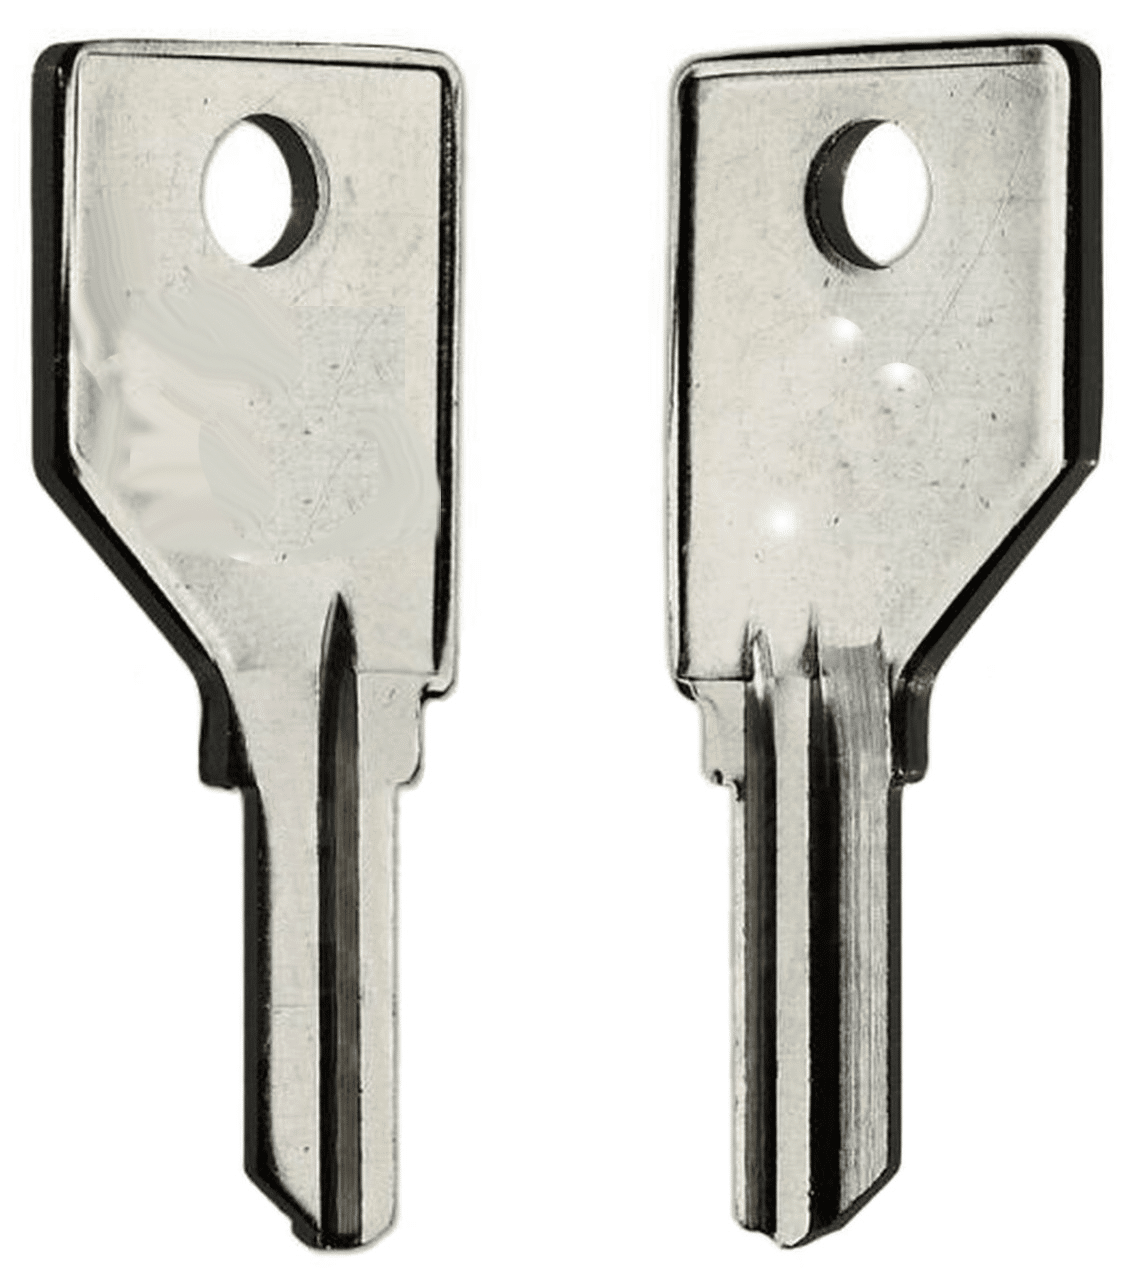 1866-10 LockGenics key blank